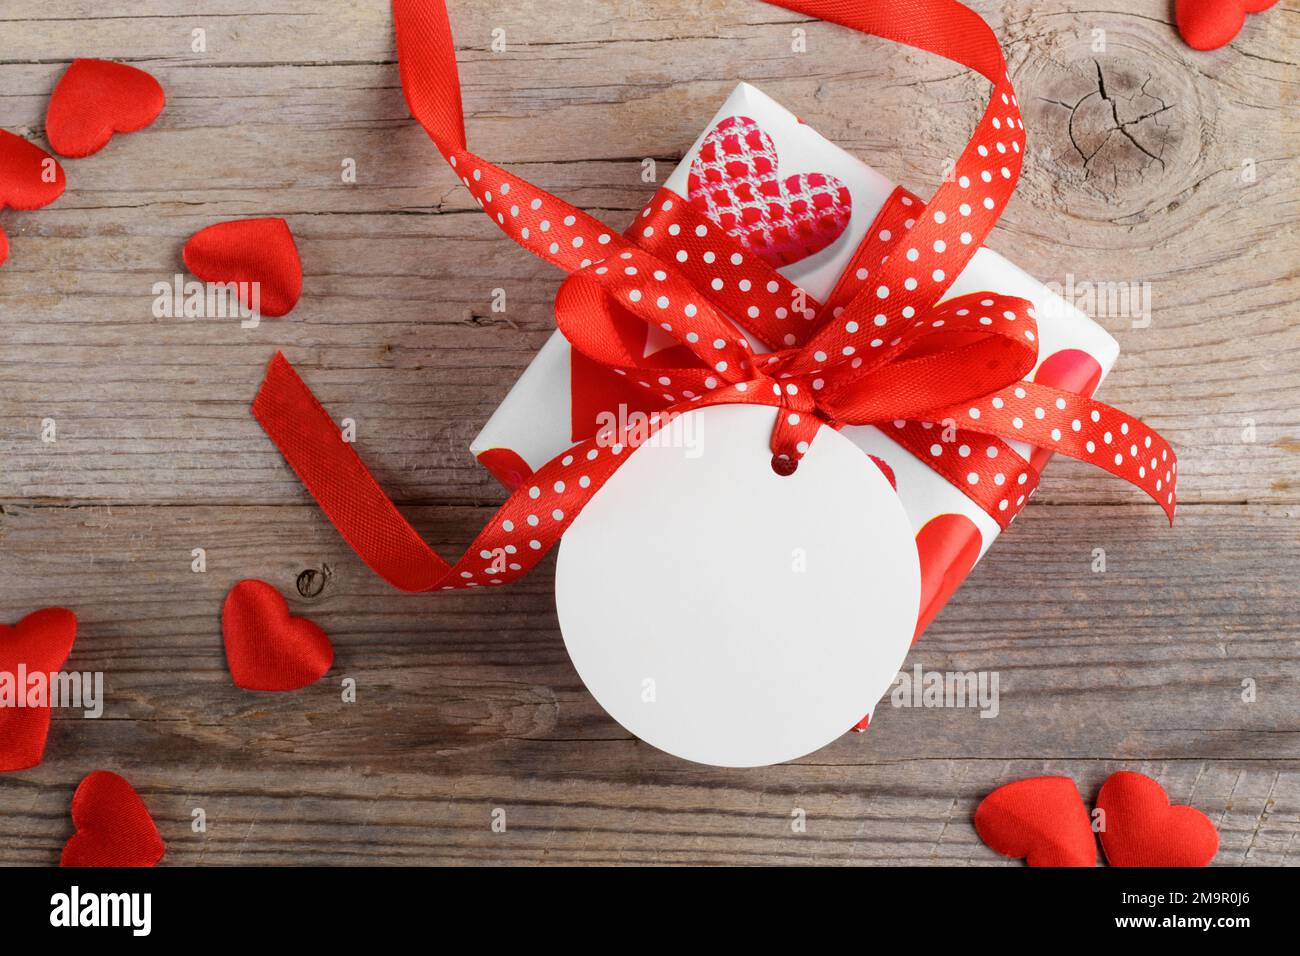 Cadeau de Saint-Valentin avec étiquette cadeau ronde blanche maquette sur fond rustique en bois avec coeur rouge Banque D'Images